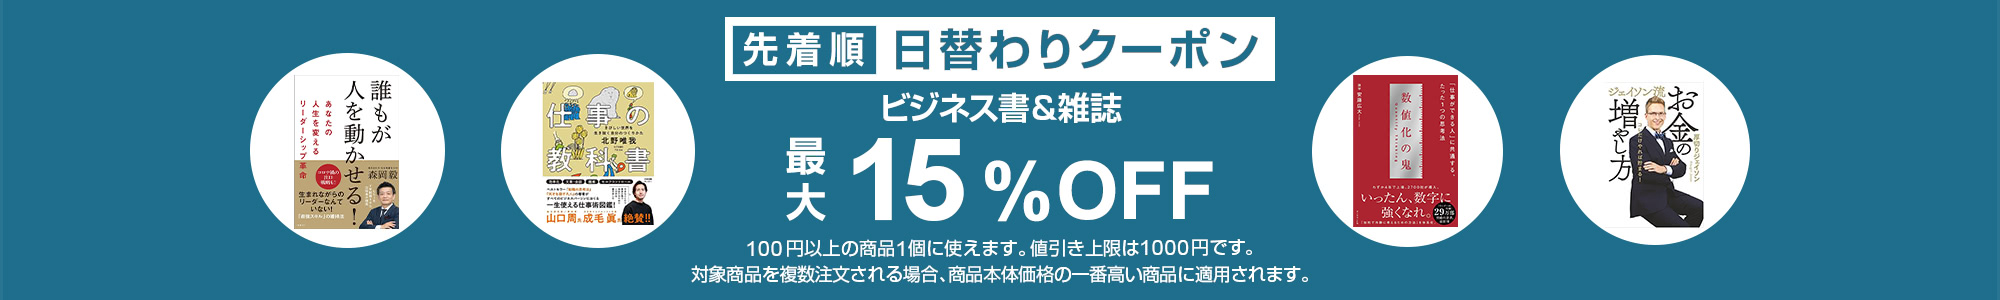 【電子書籍じゃない】Yahoo!ショッピングで1万円以下で使えるビジネス書＆雑誌カテゴリが15%OFFクーポンを配布中。本日限定。